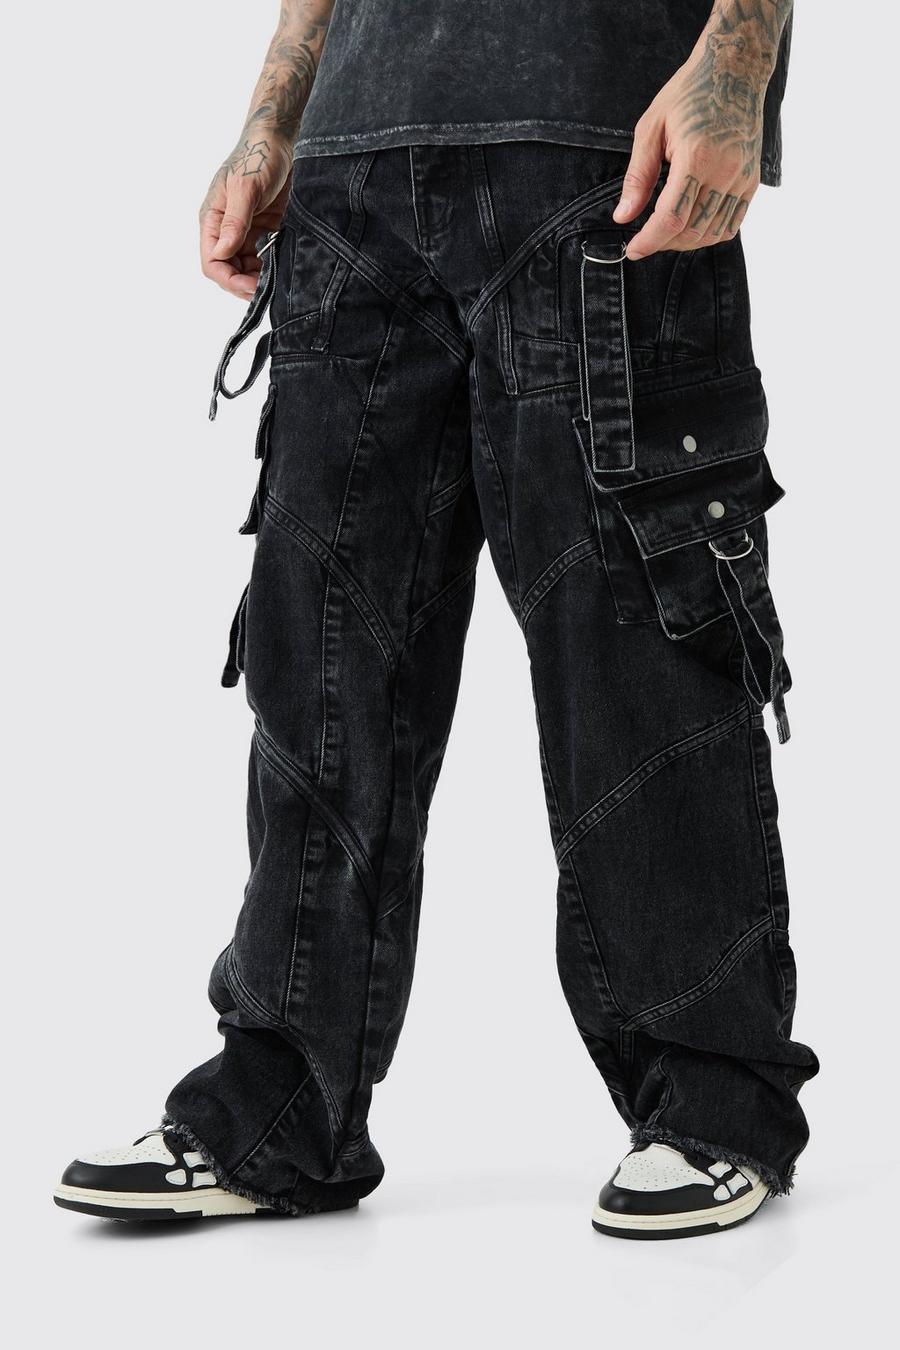 Tall lockere Jeans mit Schnallen-Detail, Washed black